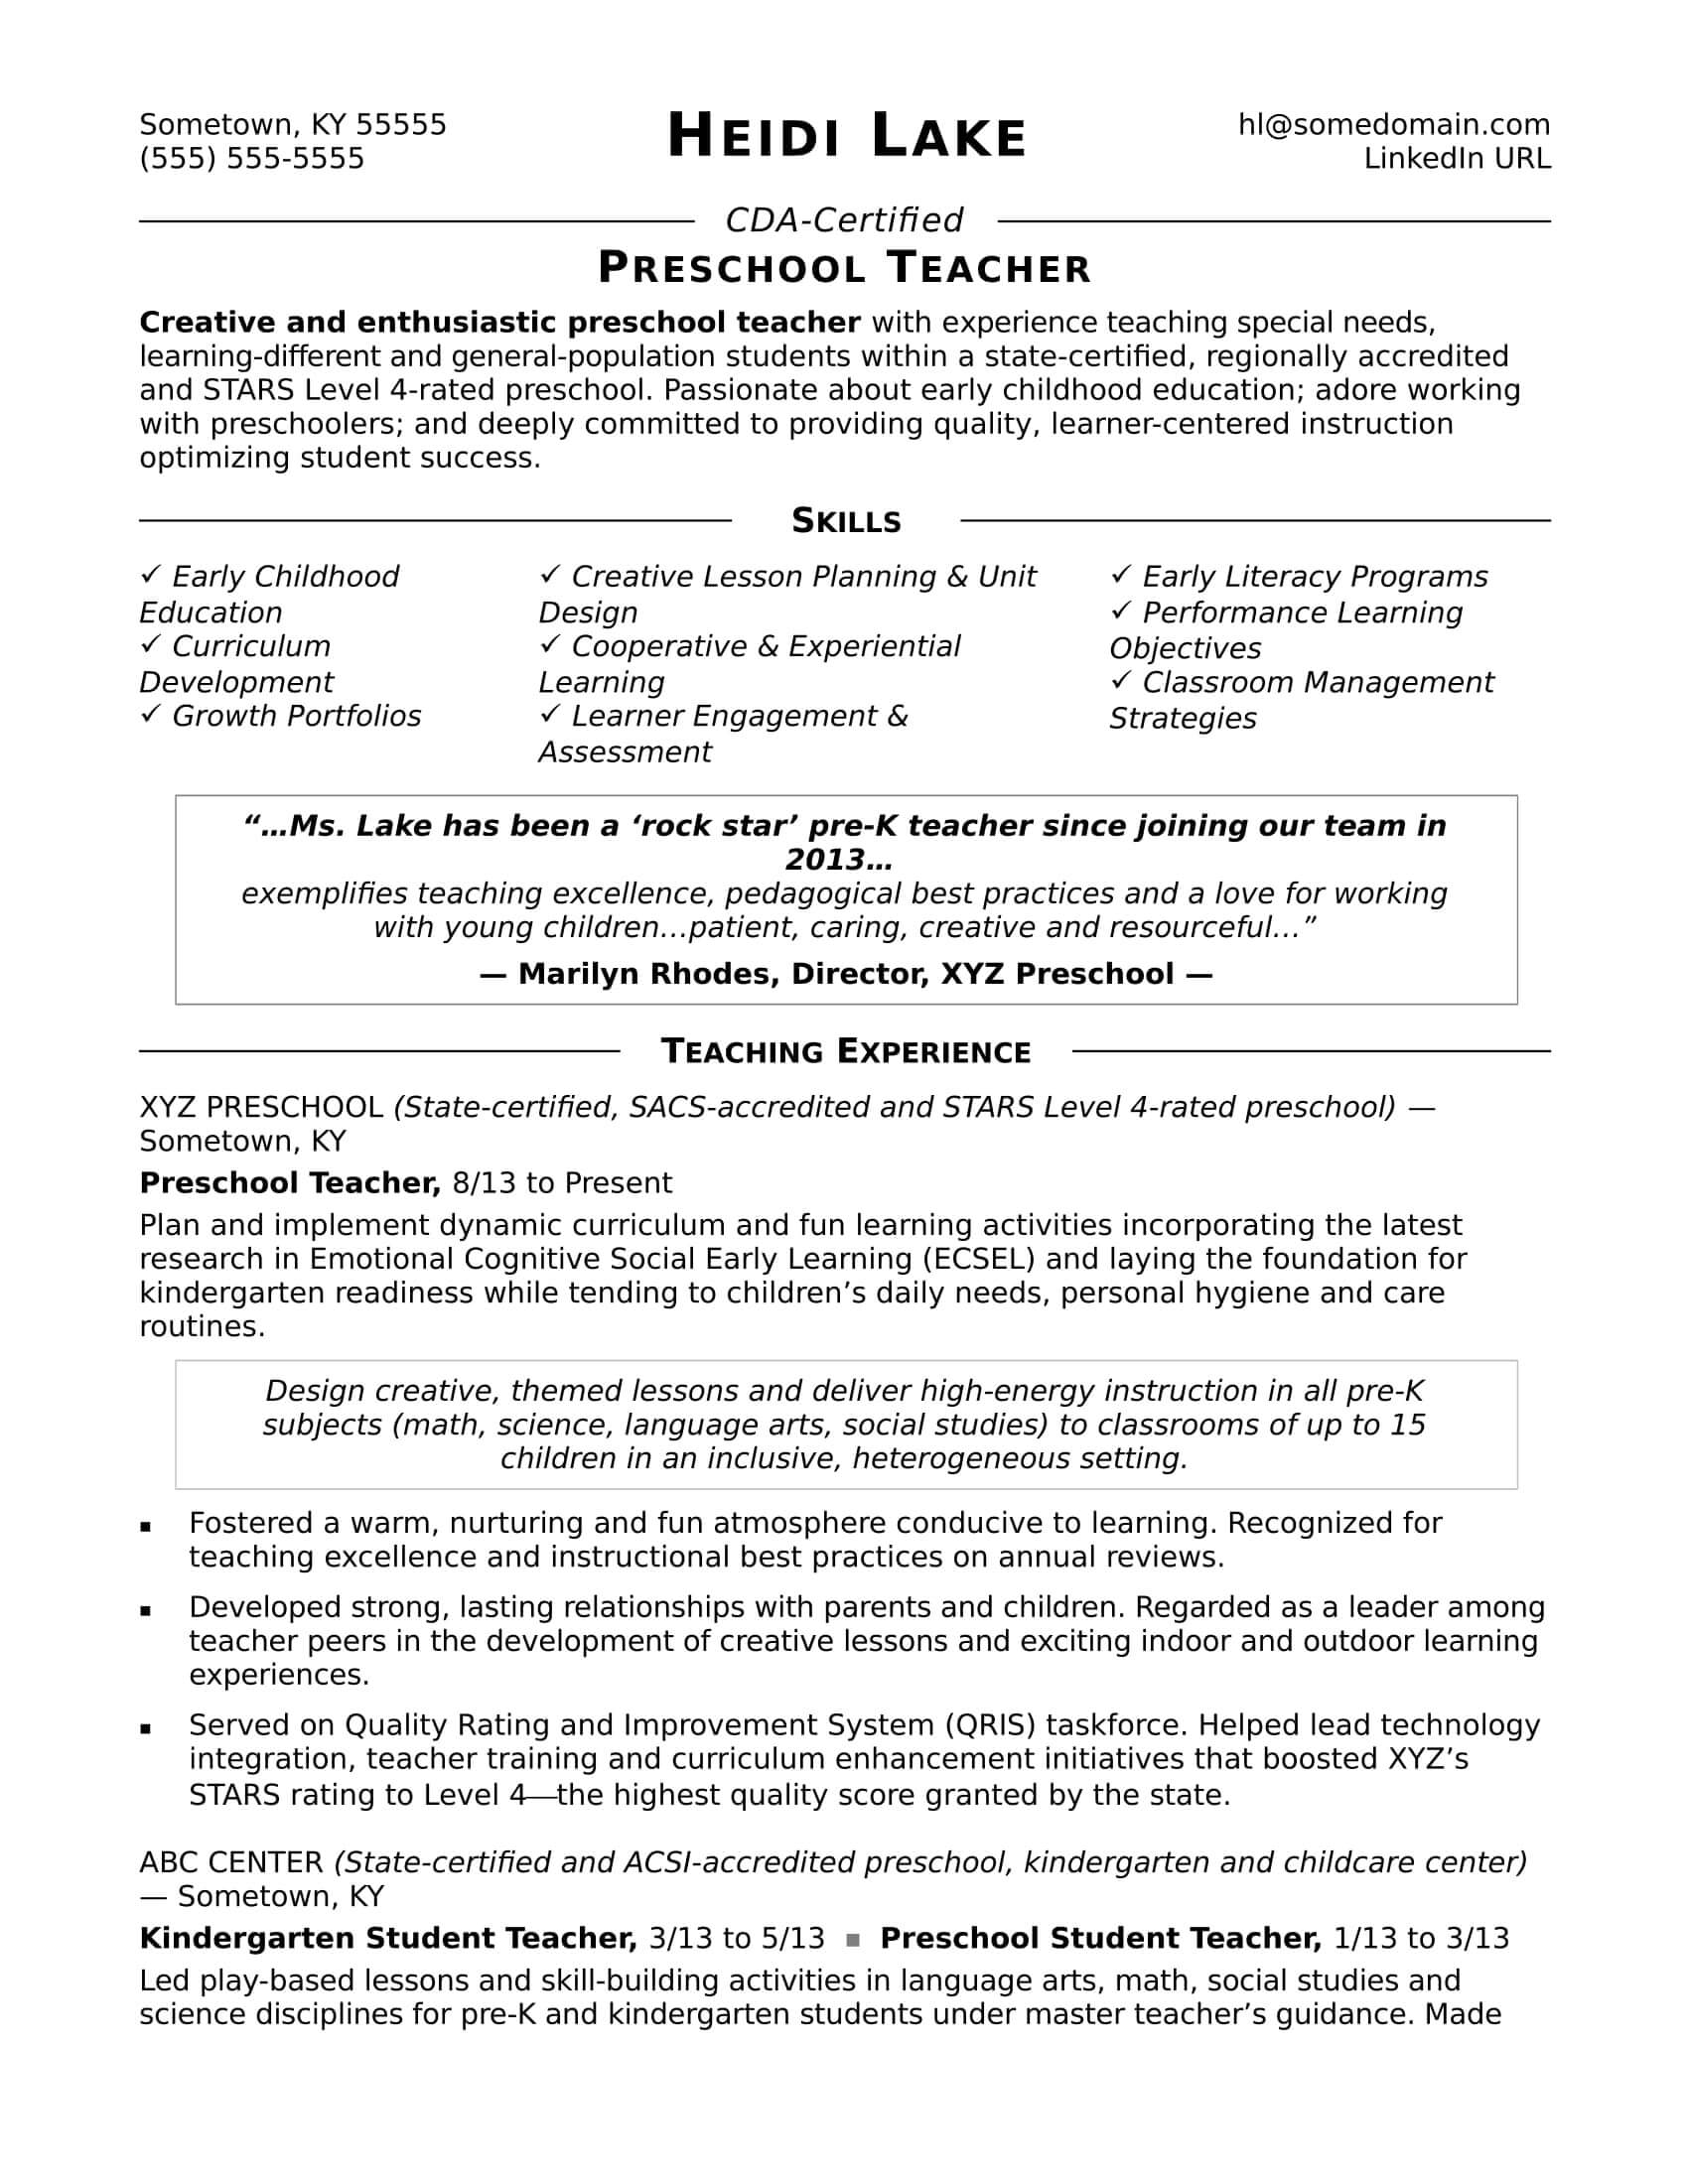 Preschool Teacher Resume Sample | Monster Intended For Service Job Card Template